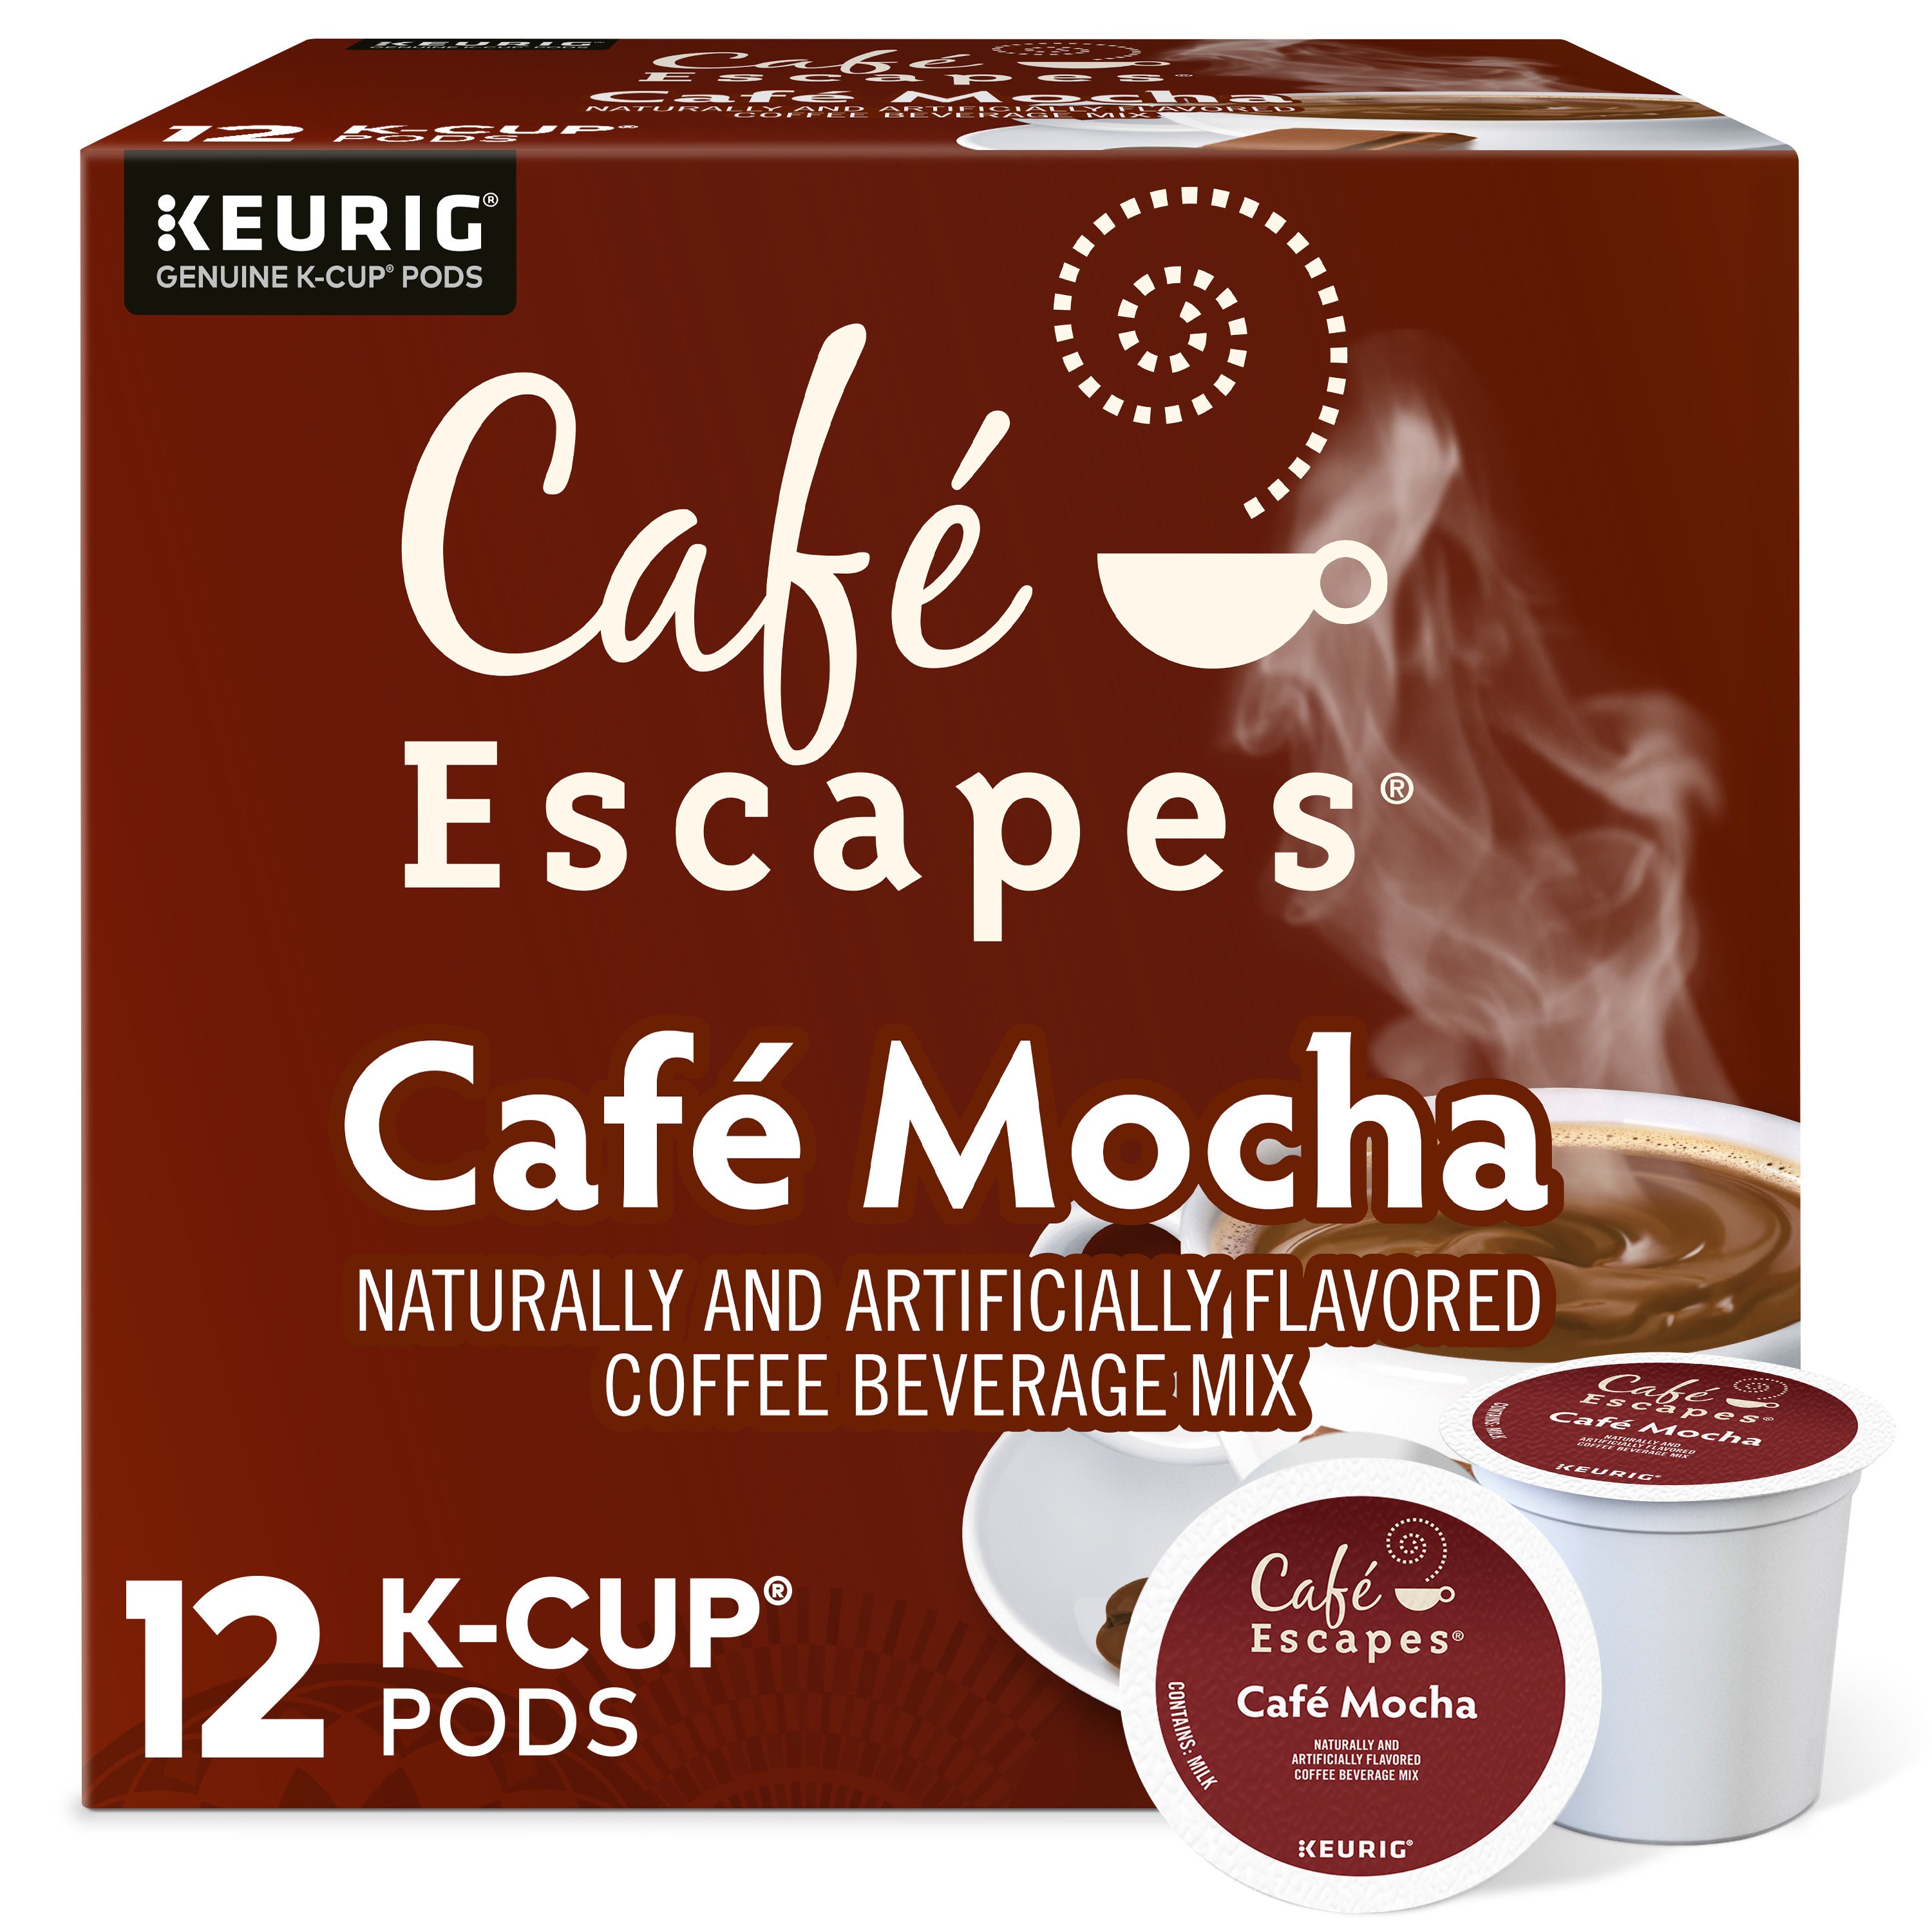 Cafe Escapes Chai Latte Single Serve Coffee K Cups - Shop Tea at H-E-B